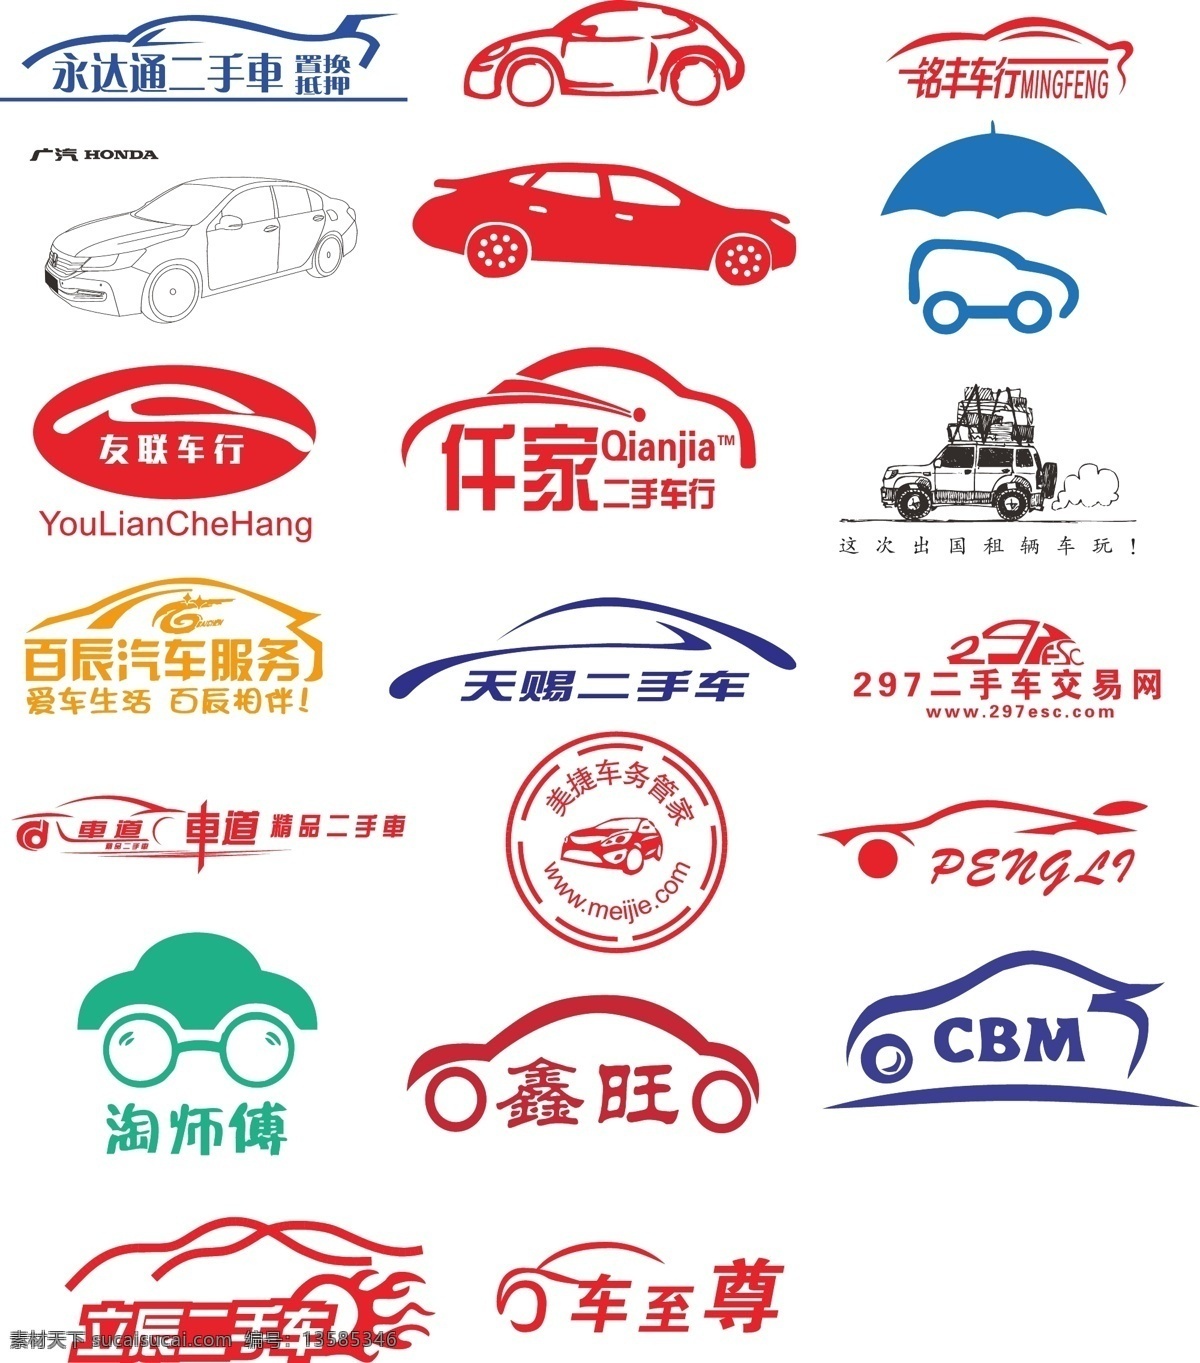 车型商标 商标 商标参考 logo英文 特色商标 原创商标 特色字体 标志图标 工具商标 其他图标